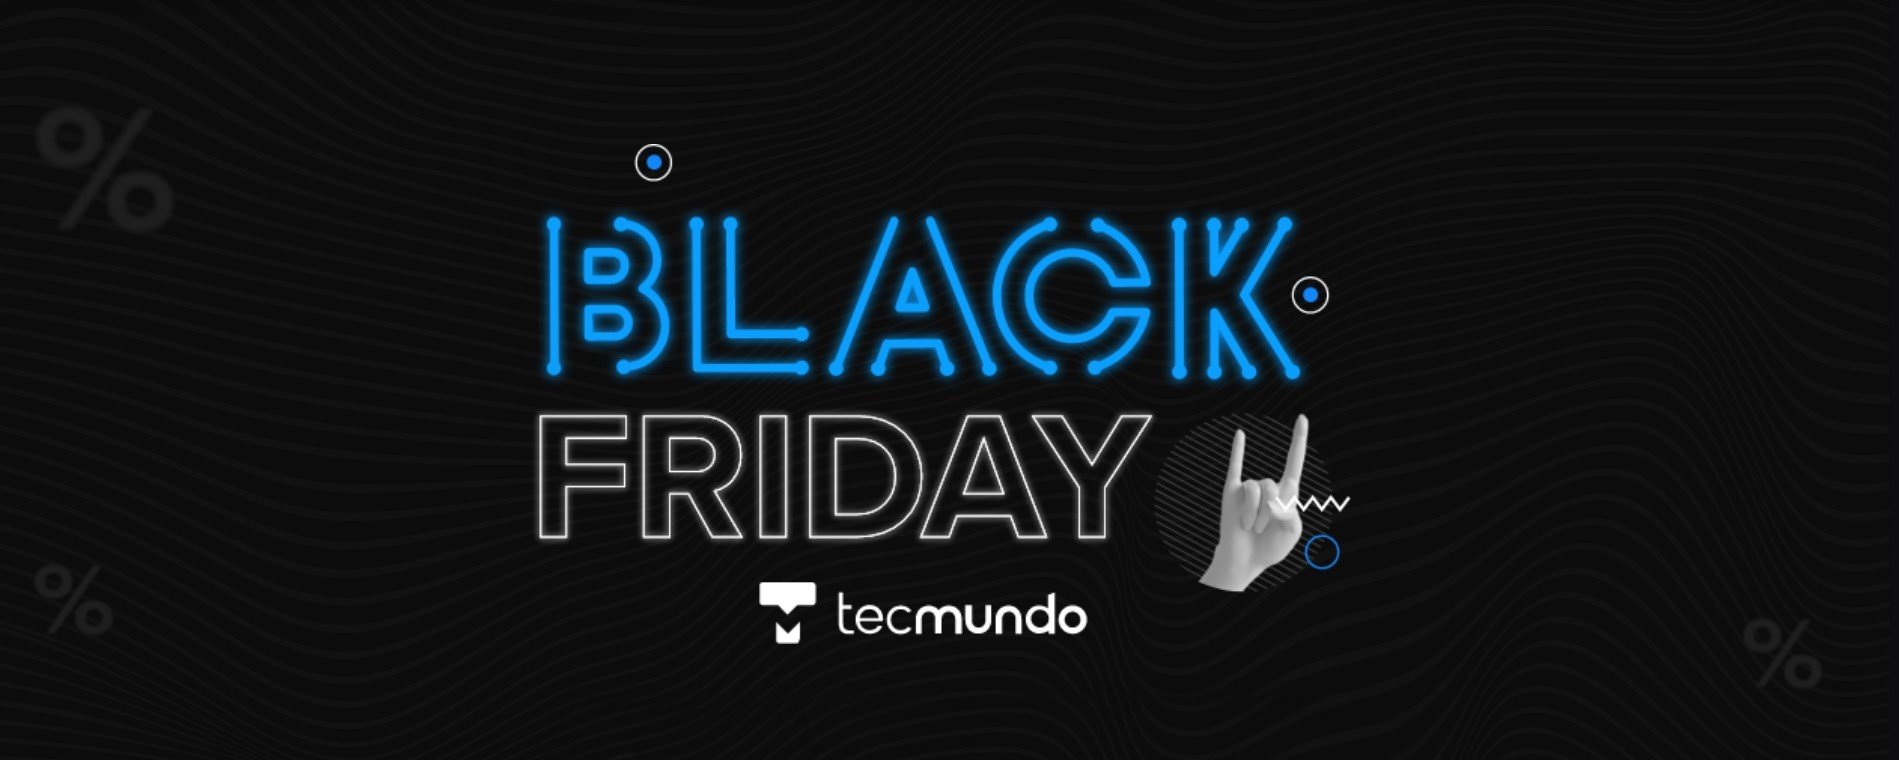 Acompanhe as melhores ofertas da Black Friday aqui no TecMundo - TecMundo